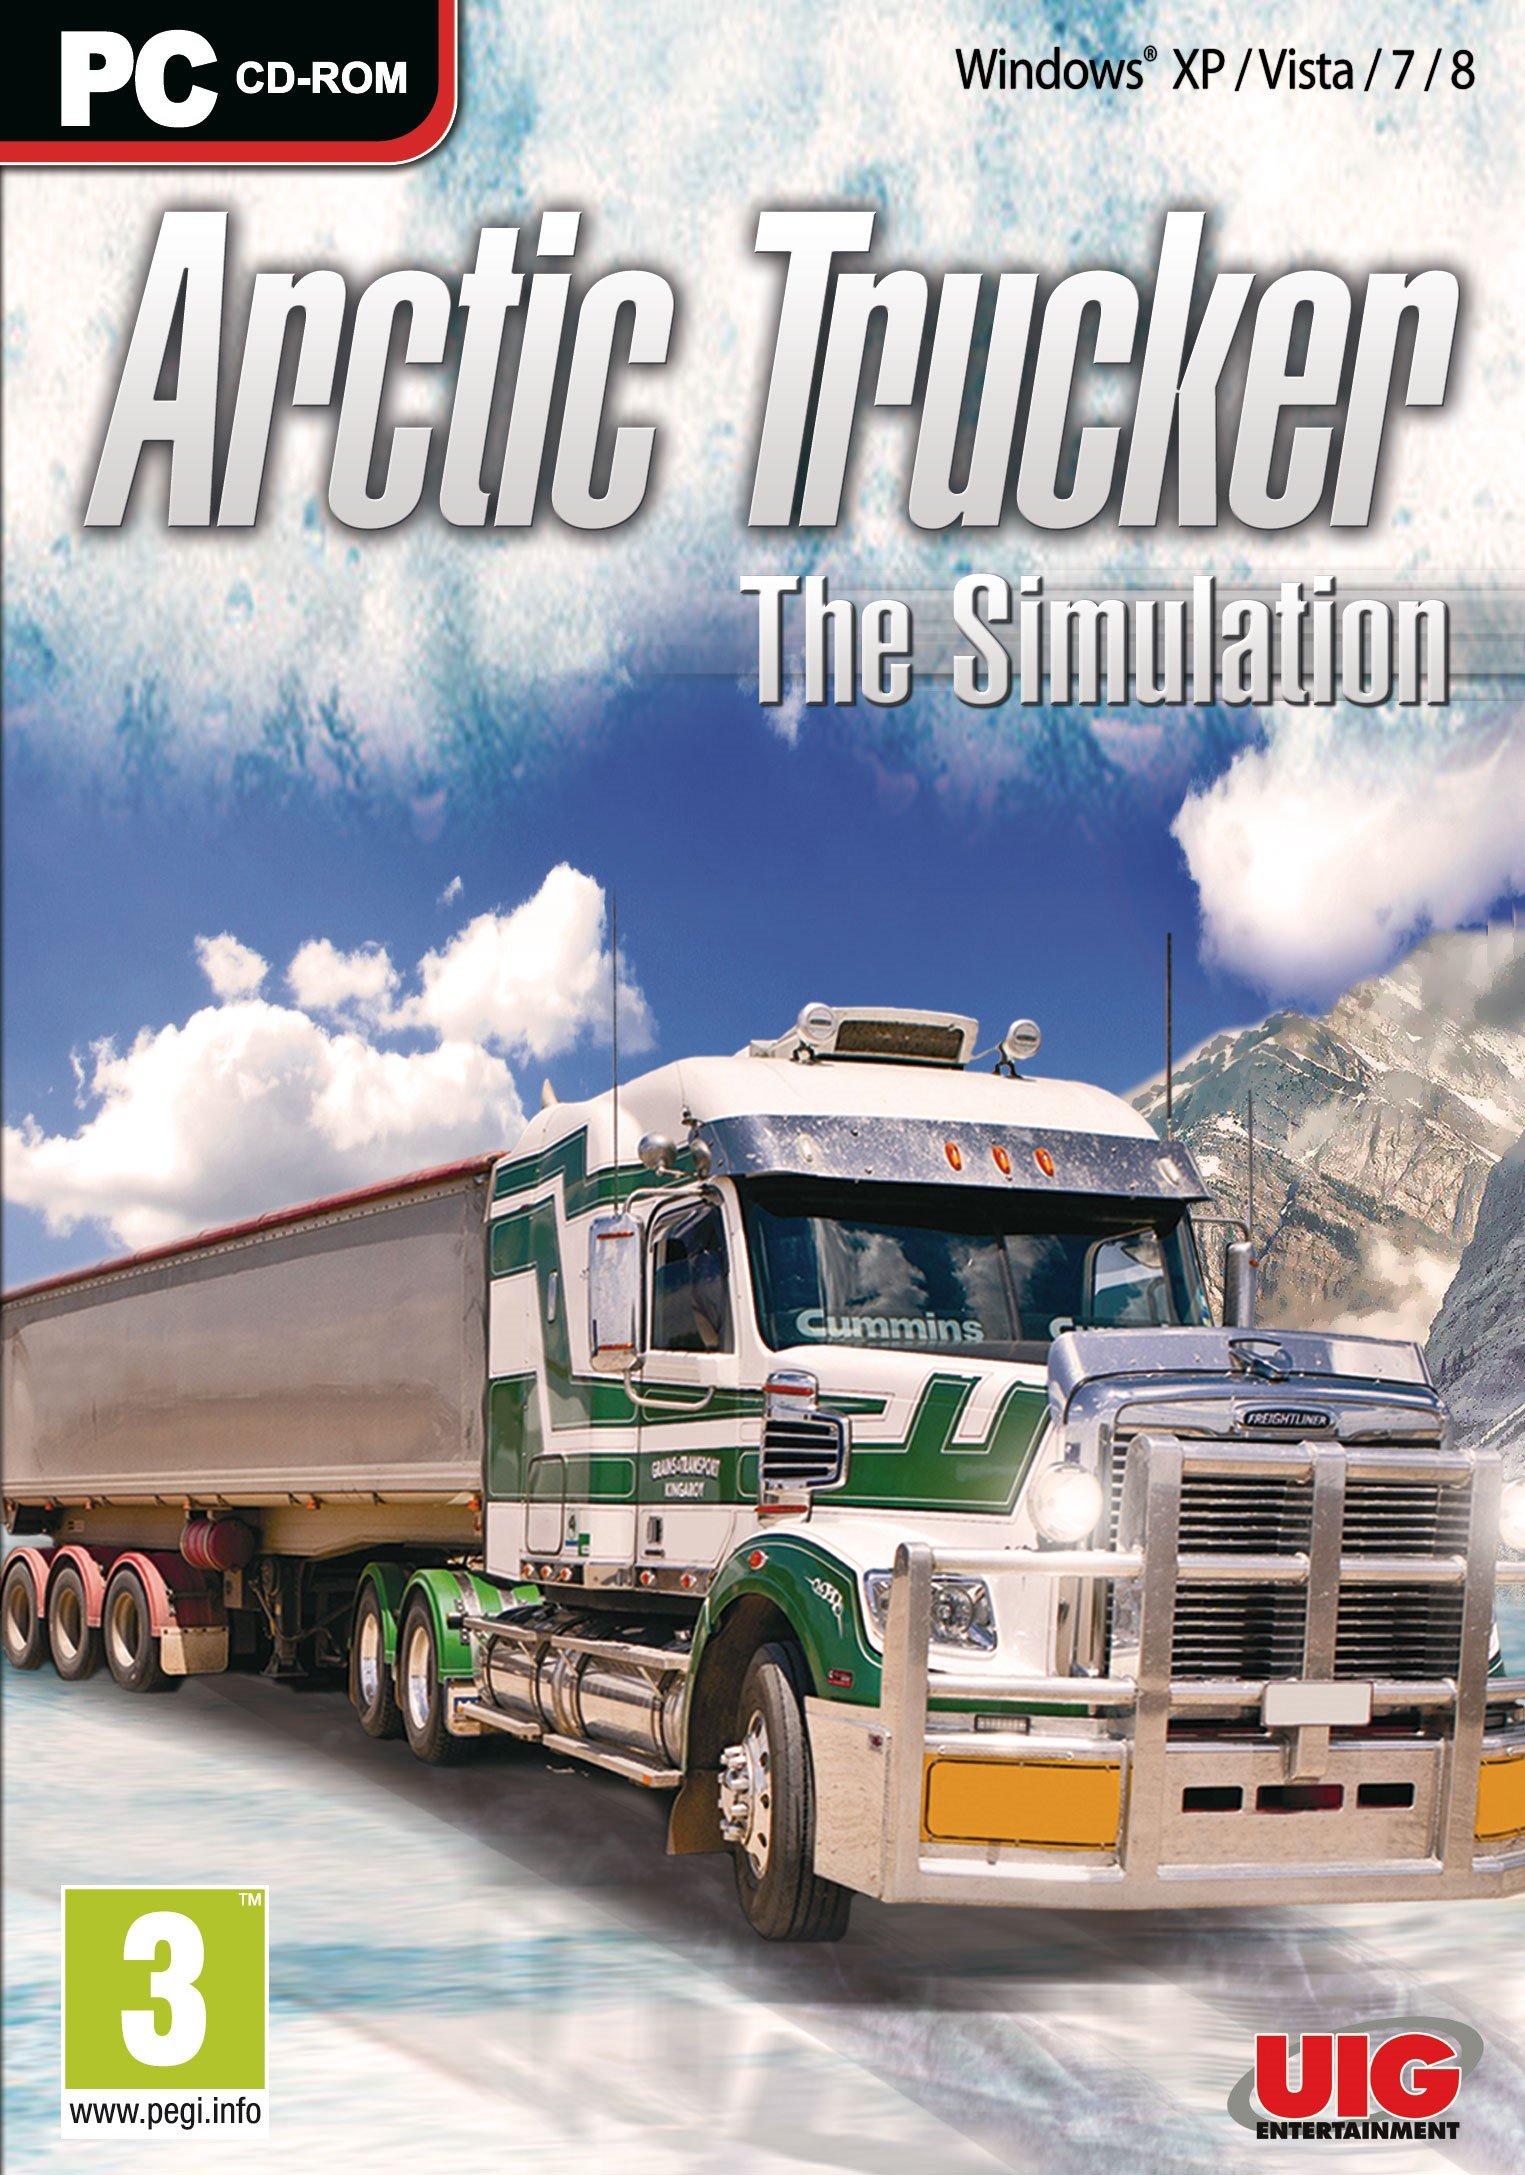 Симуляторы обложка. Arctic Trucker обложка. Arctic Trucker game обложка. Euro Truck Simulator 2. 18 Wheels of Steel обложка.